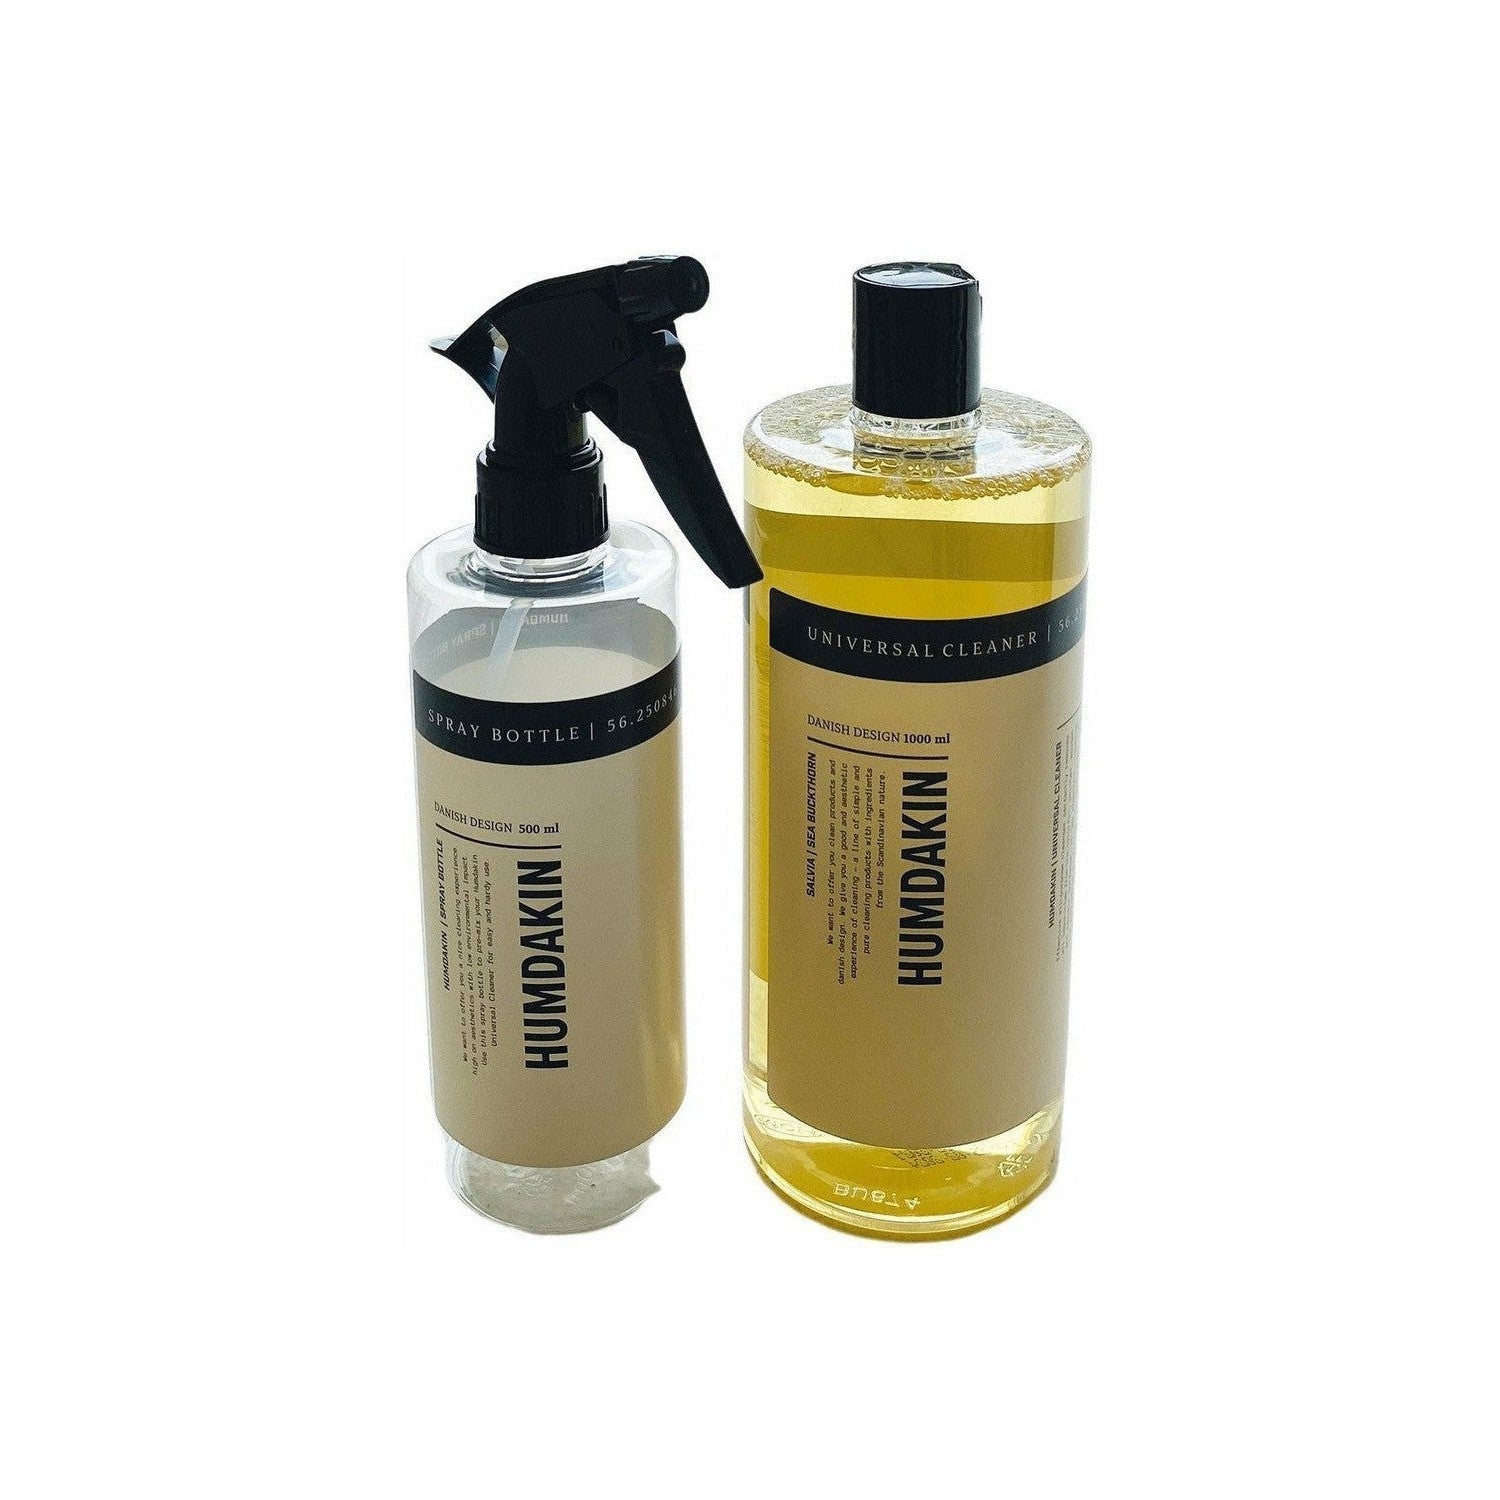 Humdakin Reinigingskit 1000 ml Universal Cleaner + Spray Bottle